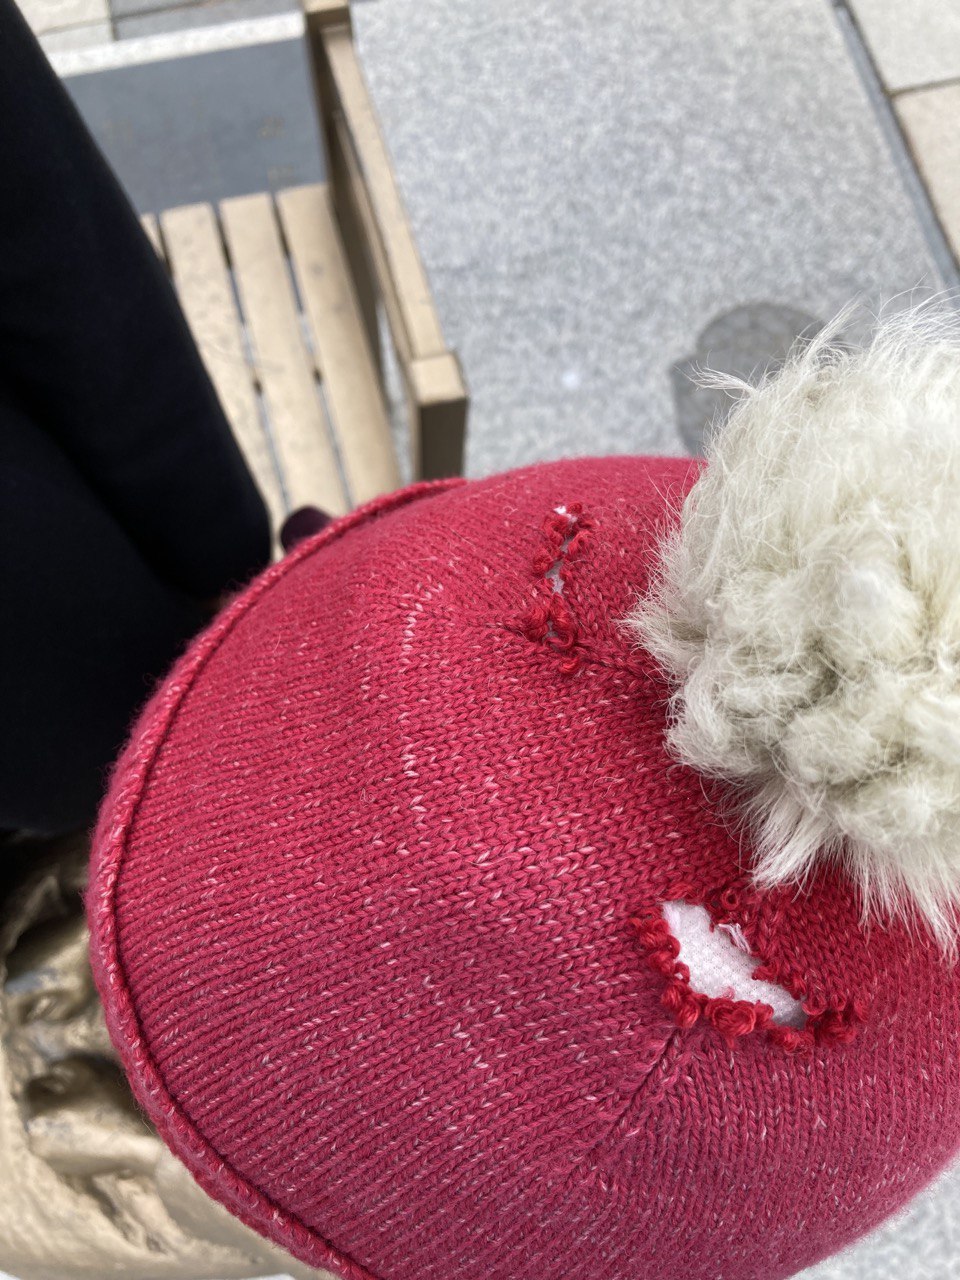 세종시 호수공원에 설치된 ‘평화의 소녀상’에 겨울나기를 위해 입혀놓은 모자가 예리한 칼로 훼손된 것으로 보이는 정황이 발견됐다. 세종참여자치시민연대 제공